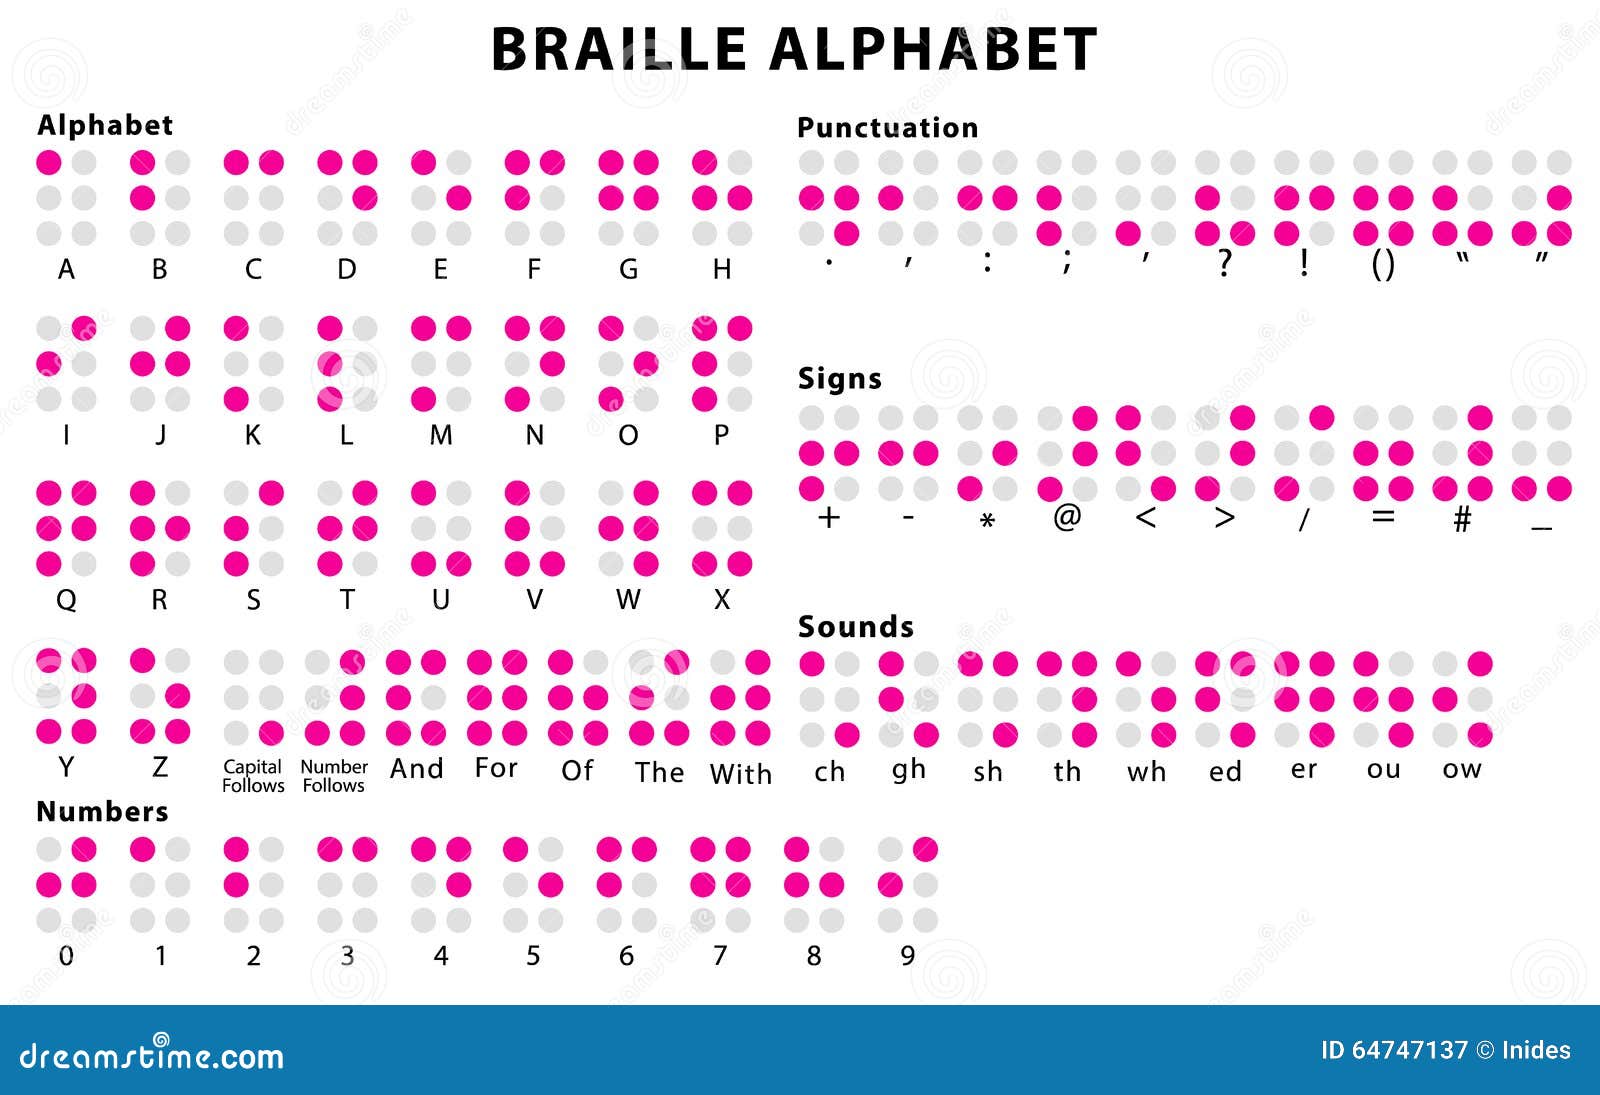 syst-me-d-alphabet-de-braille-illustration-de-vecteur-illustration-du